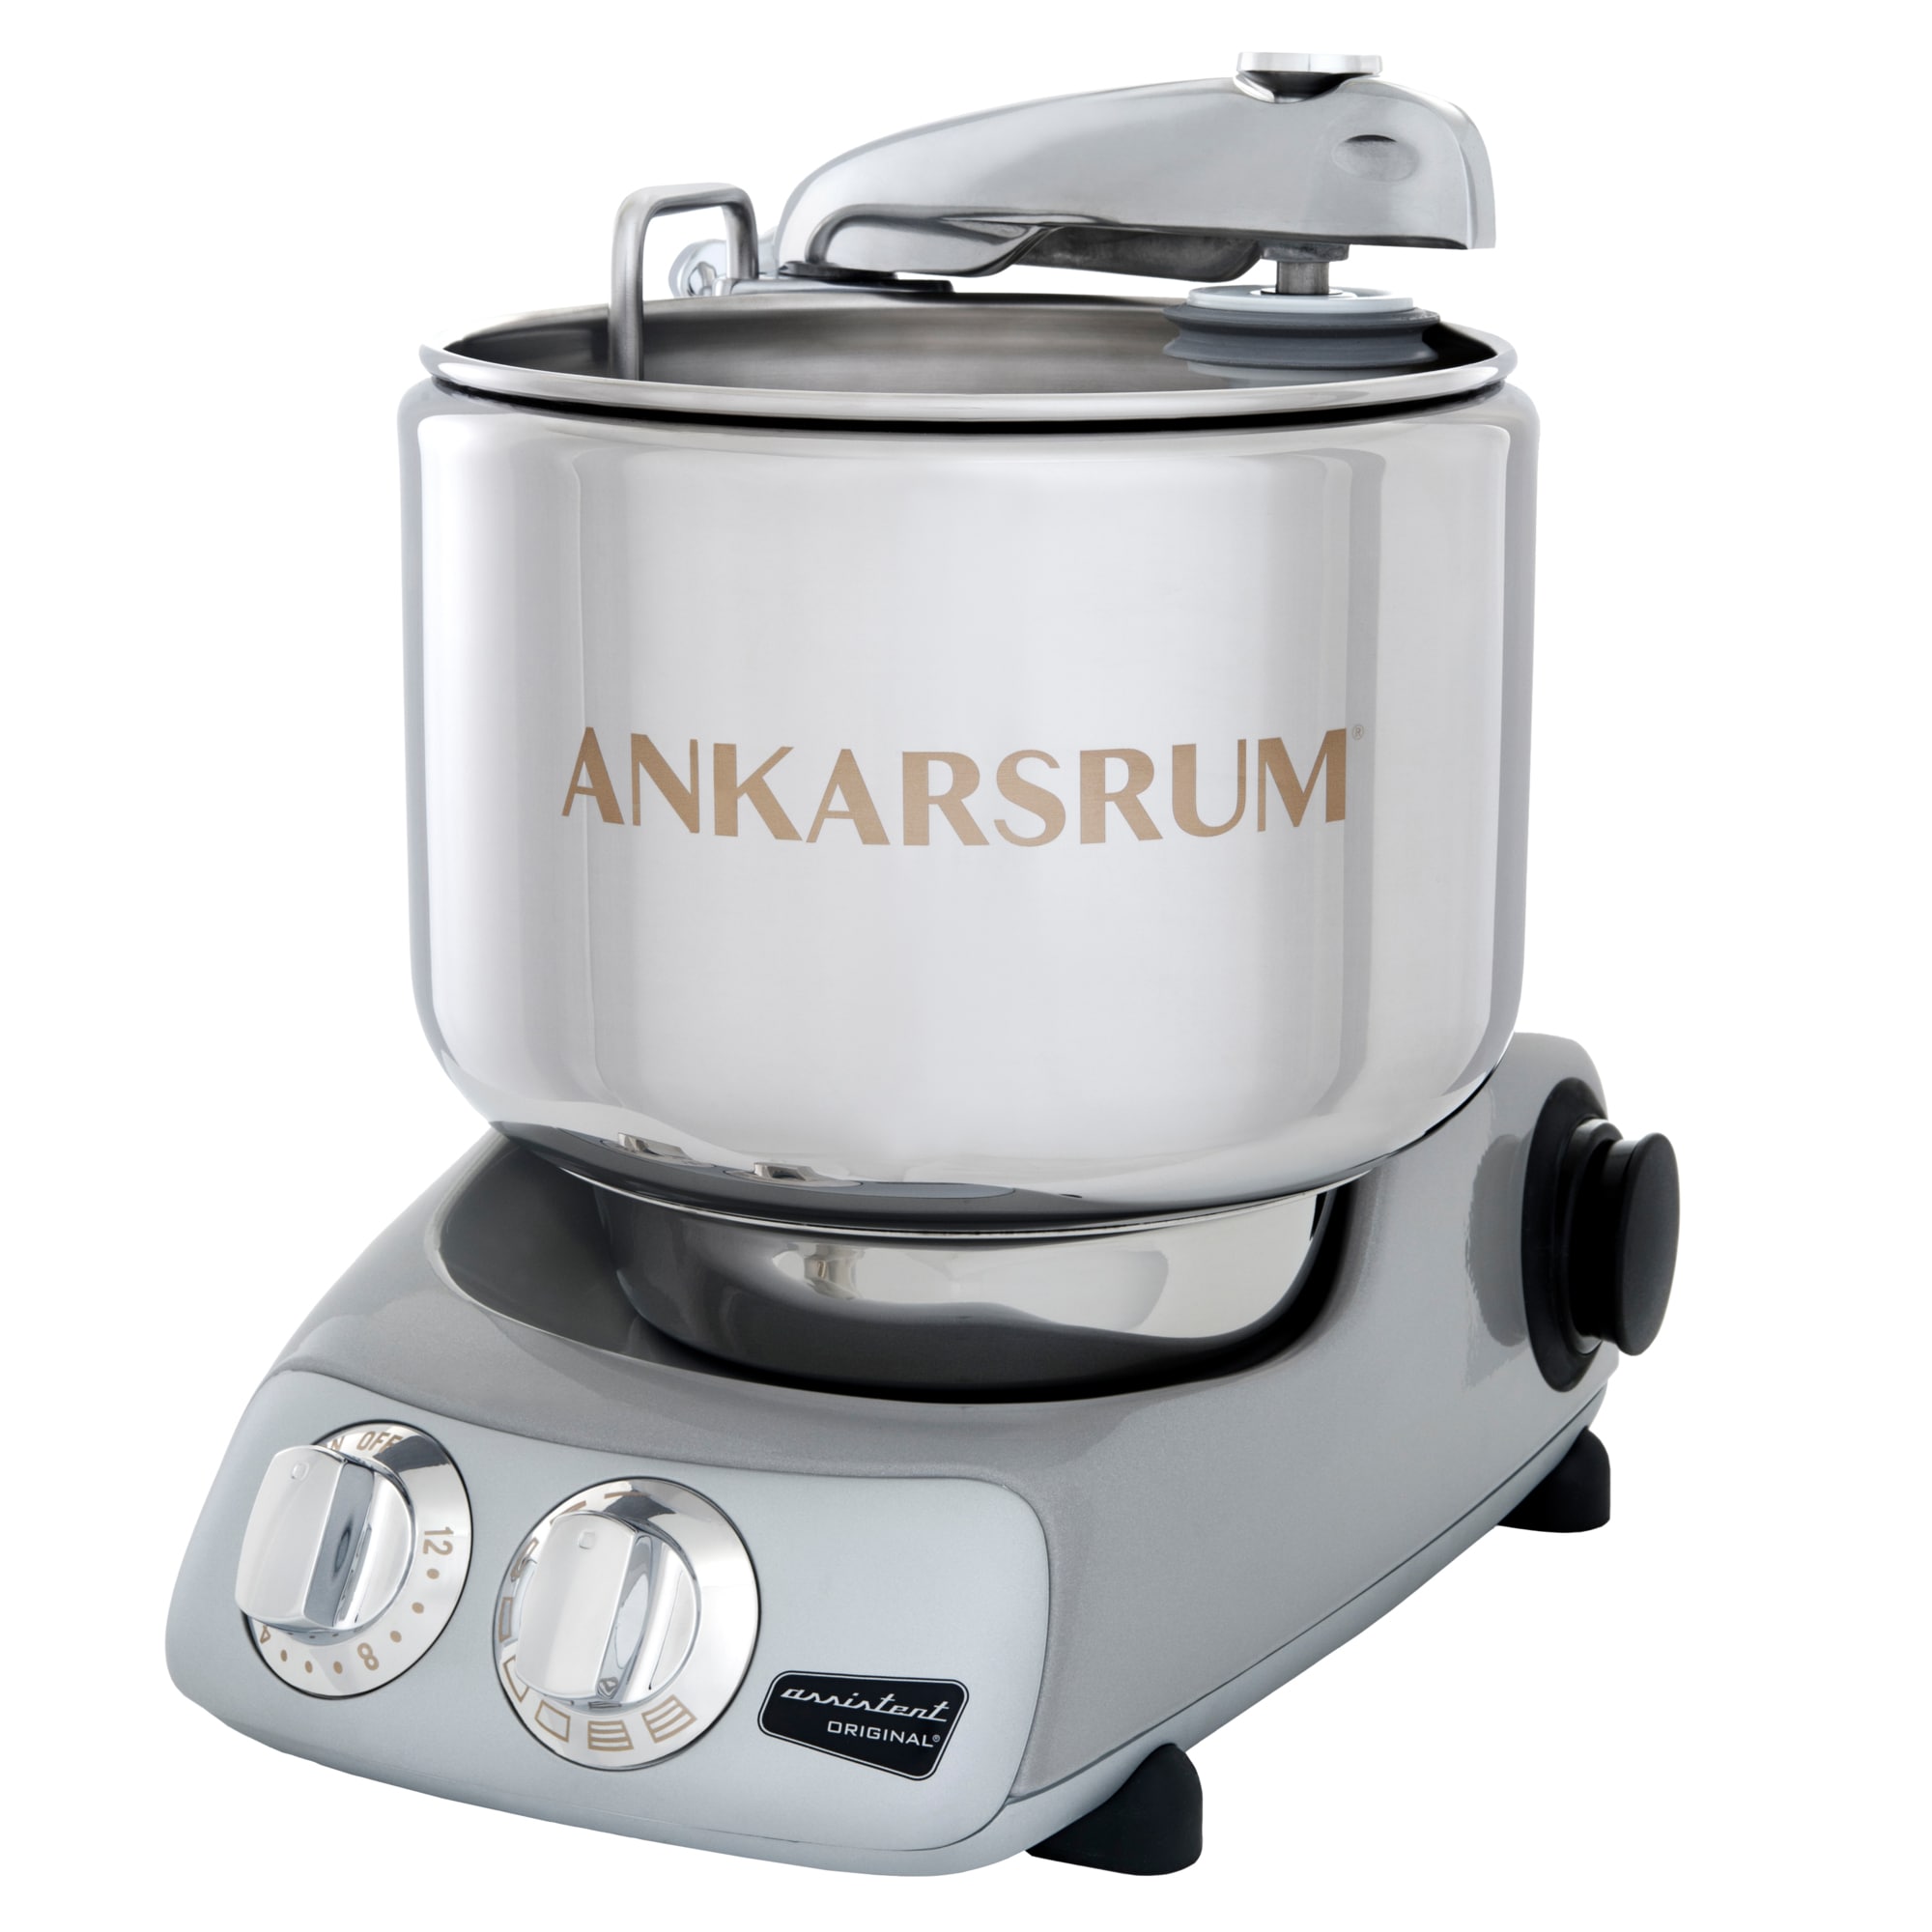 Ankarsrum Jubilee Silver køkkenmaskine AKM6230 (sølv) thumbnail